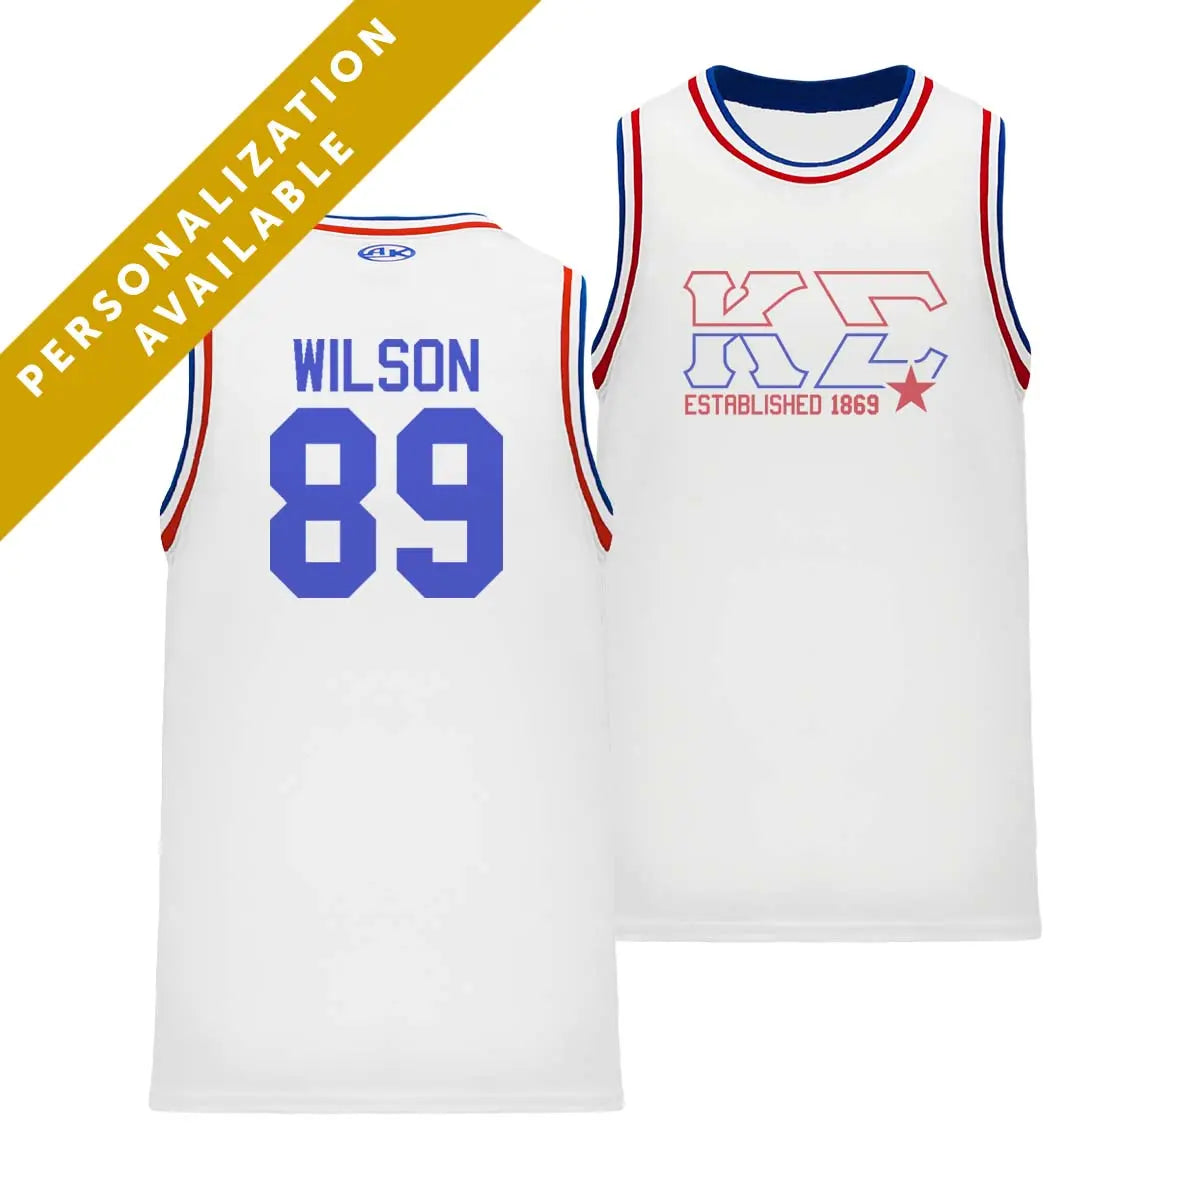 Kappa Sig Retro Block Basketball Jersey – Kappa Sigma Official Store